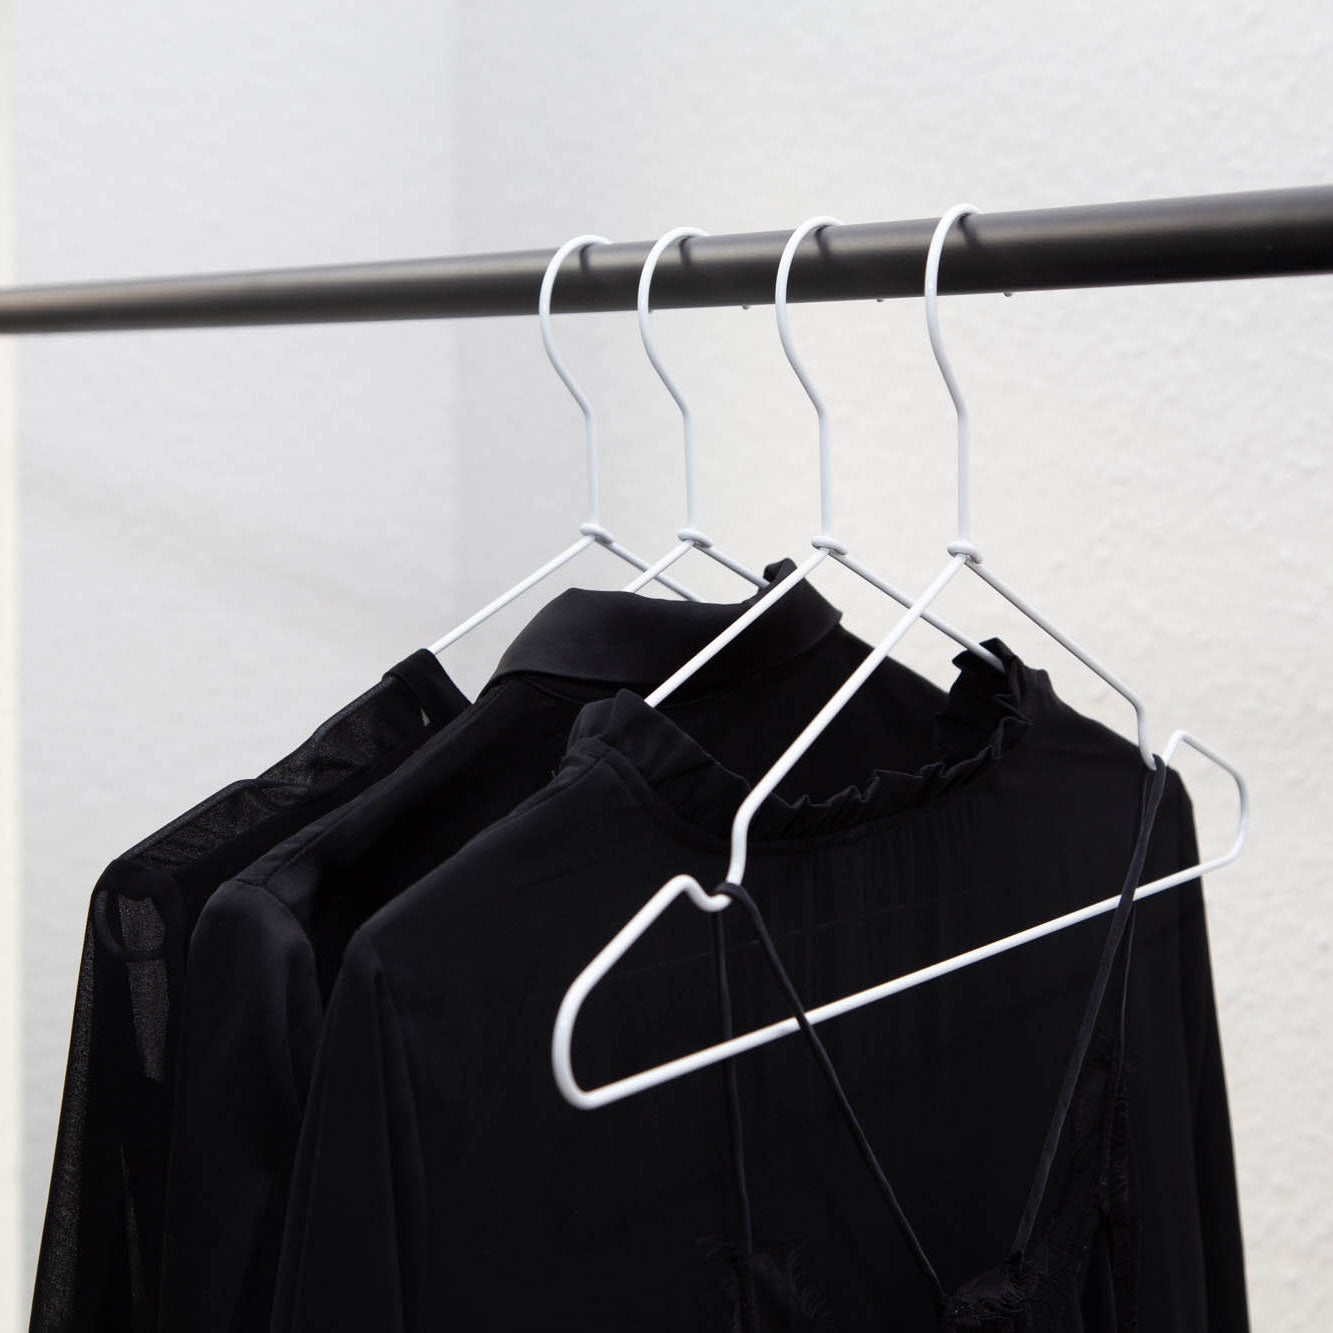 Black Coat Hangers